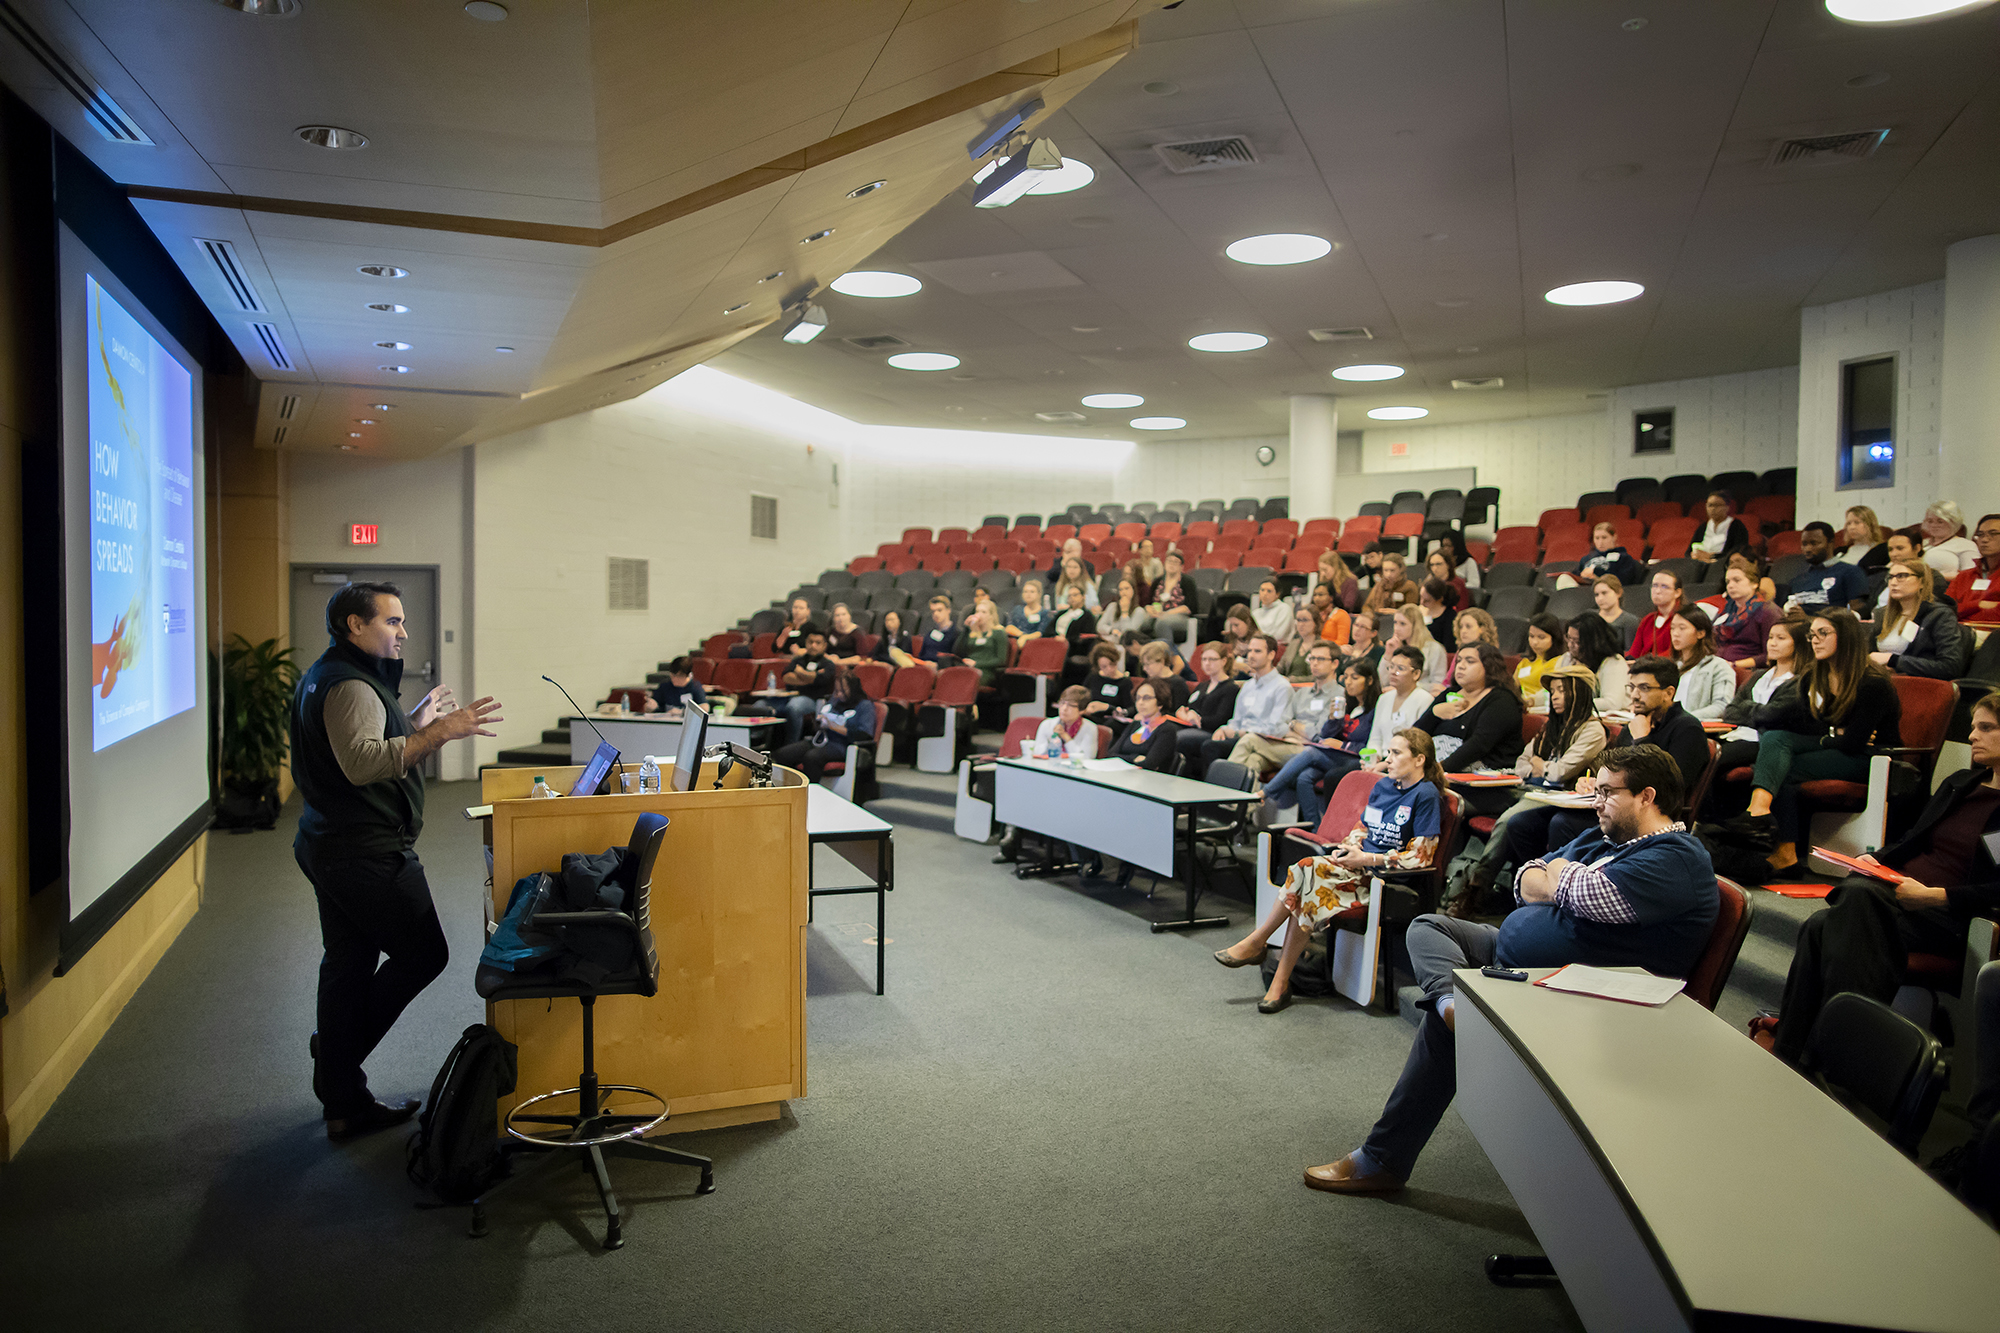 Damon Centola speaks to students in an auditorium